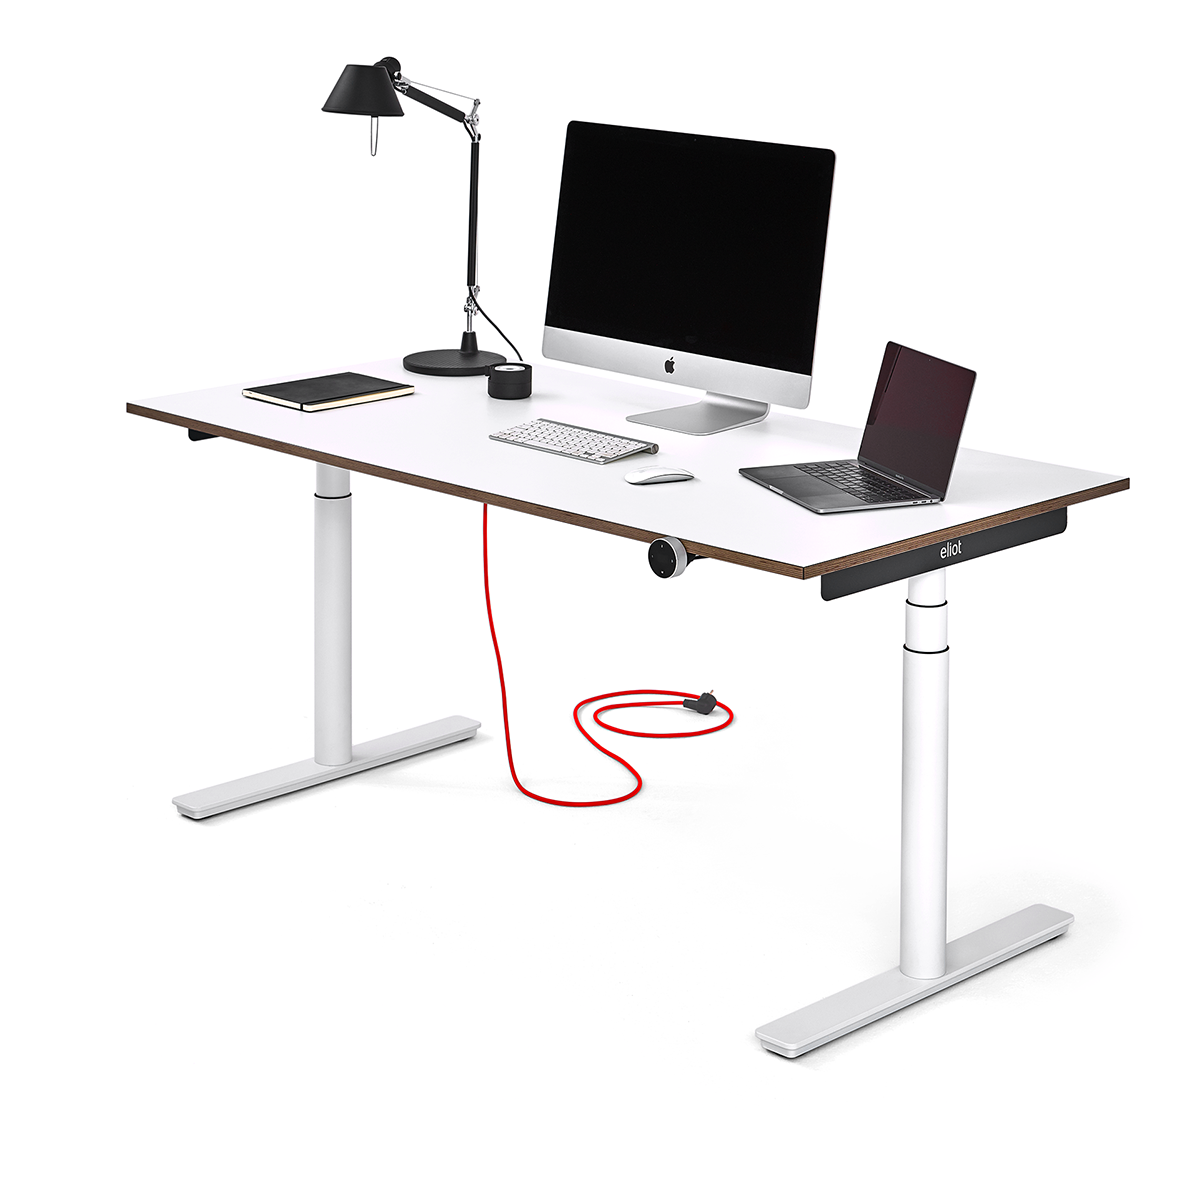 Höhenverstellbarer Schreibtisch Eliot vor weißem Hintergrund 3/4 Ansicht mit PC, Laptop und Tischleuchte